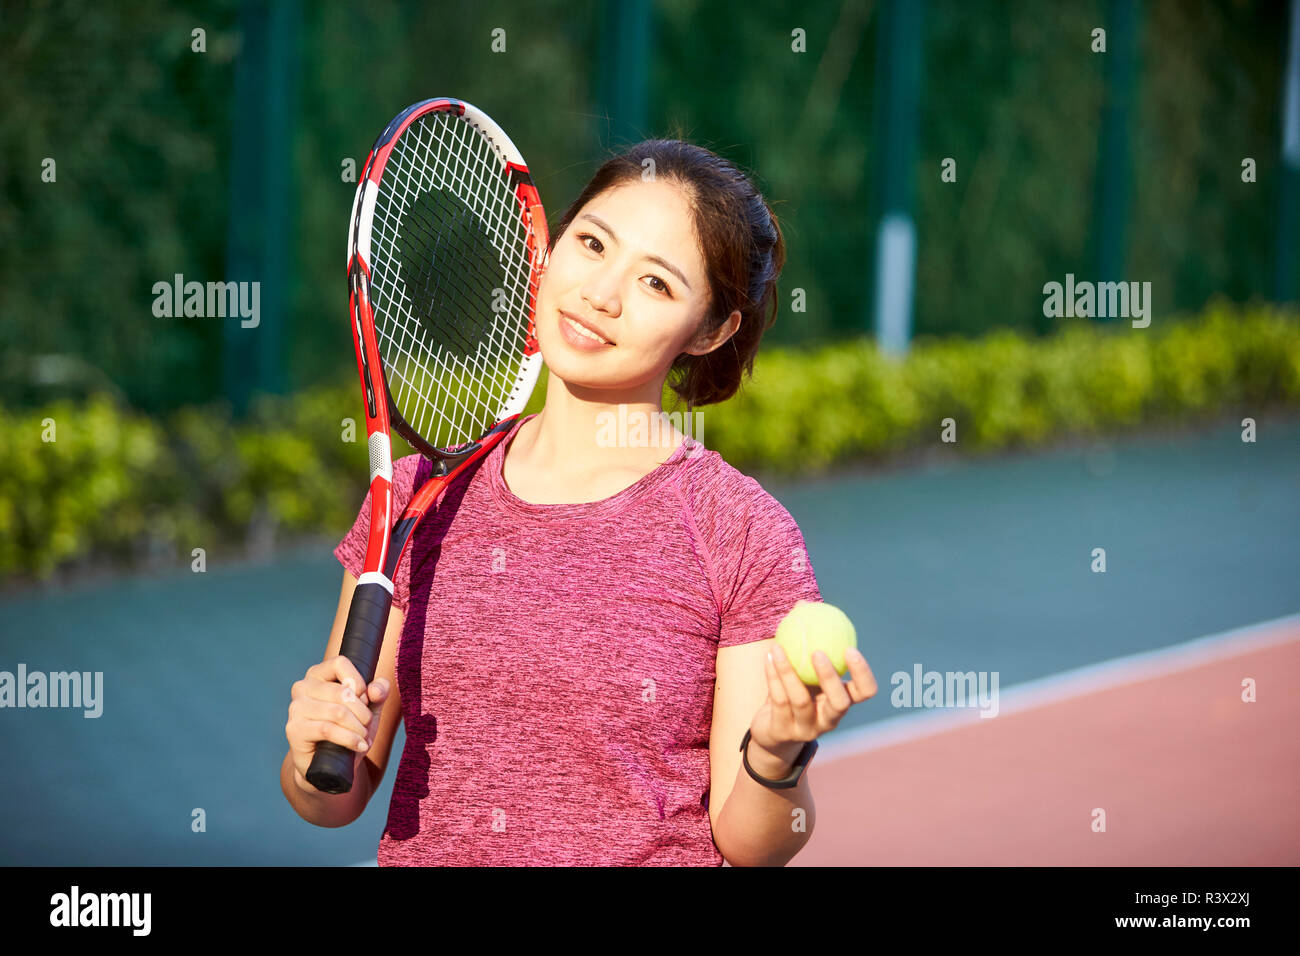 Outdoor retrato de un joven jugador de tenis Asia mirando a la cámara sonriendo Foto de stock